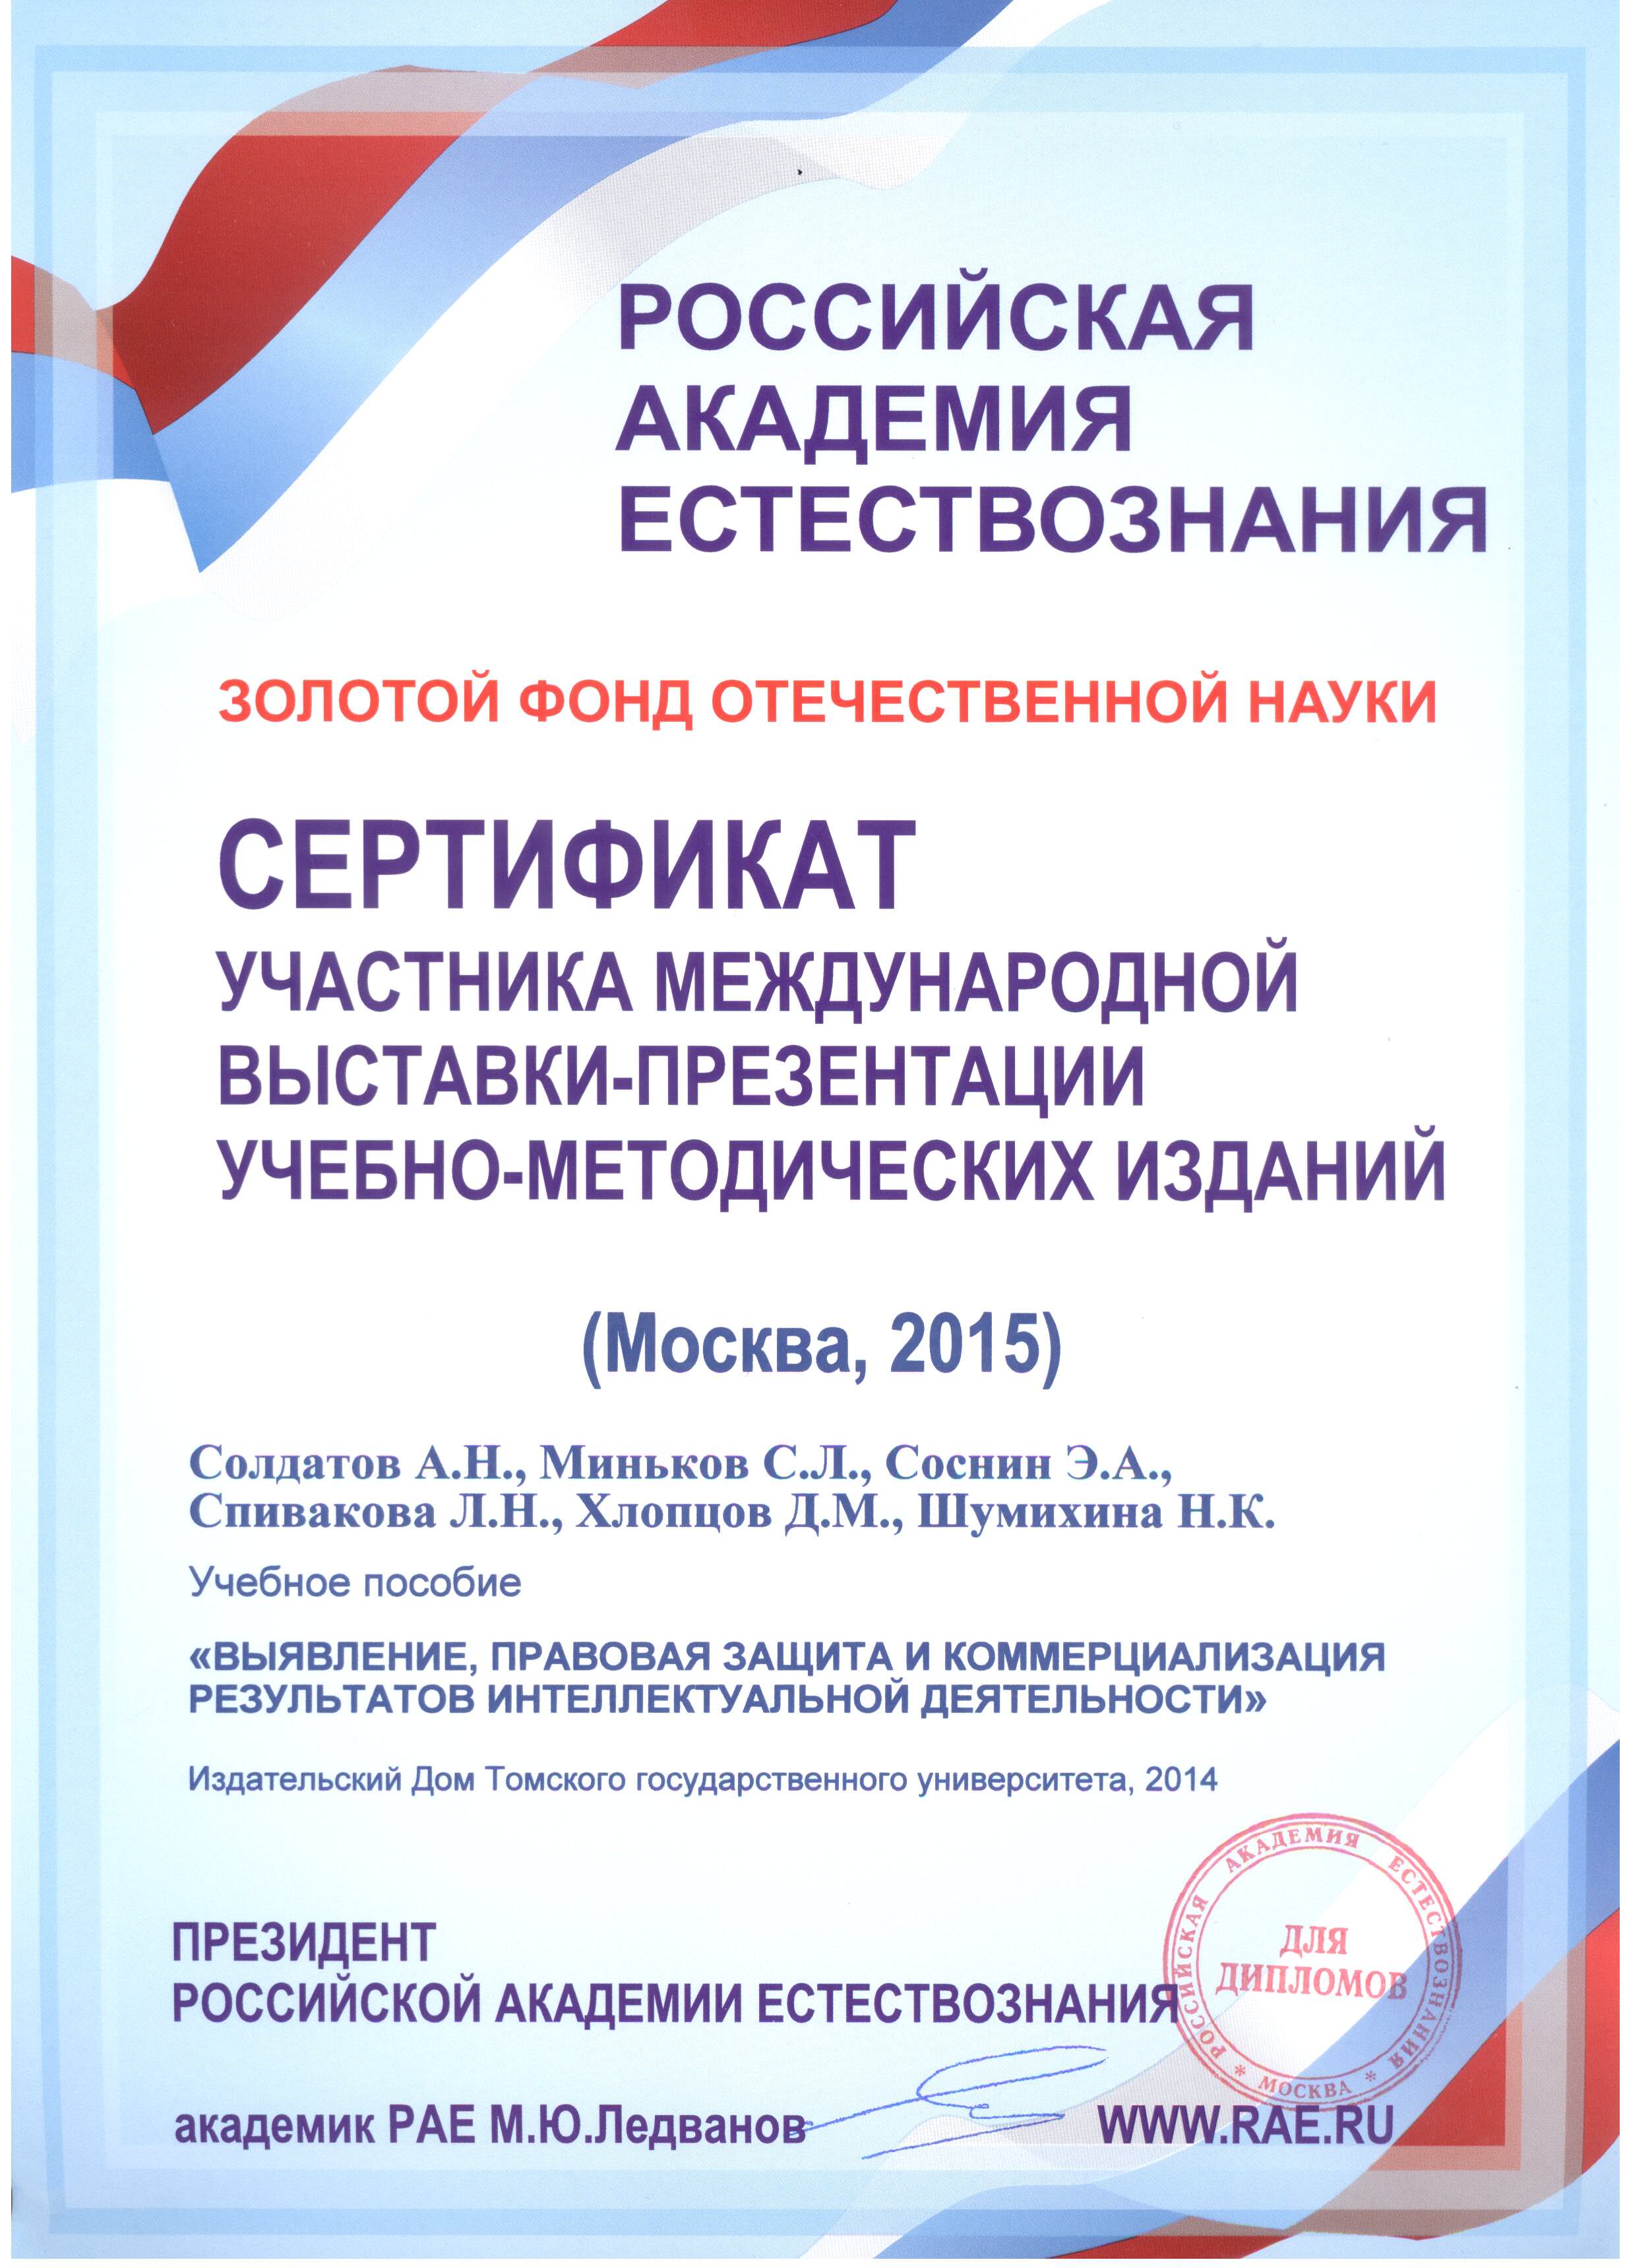 Сертификат участника международной выстаки